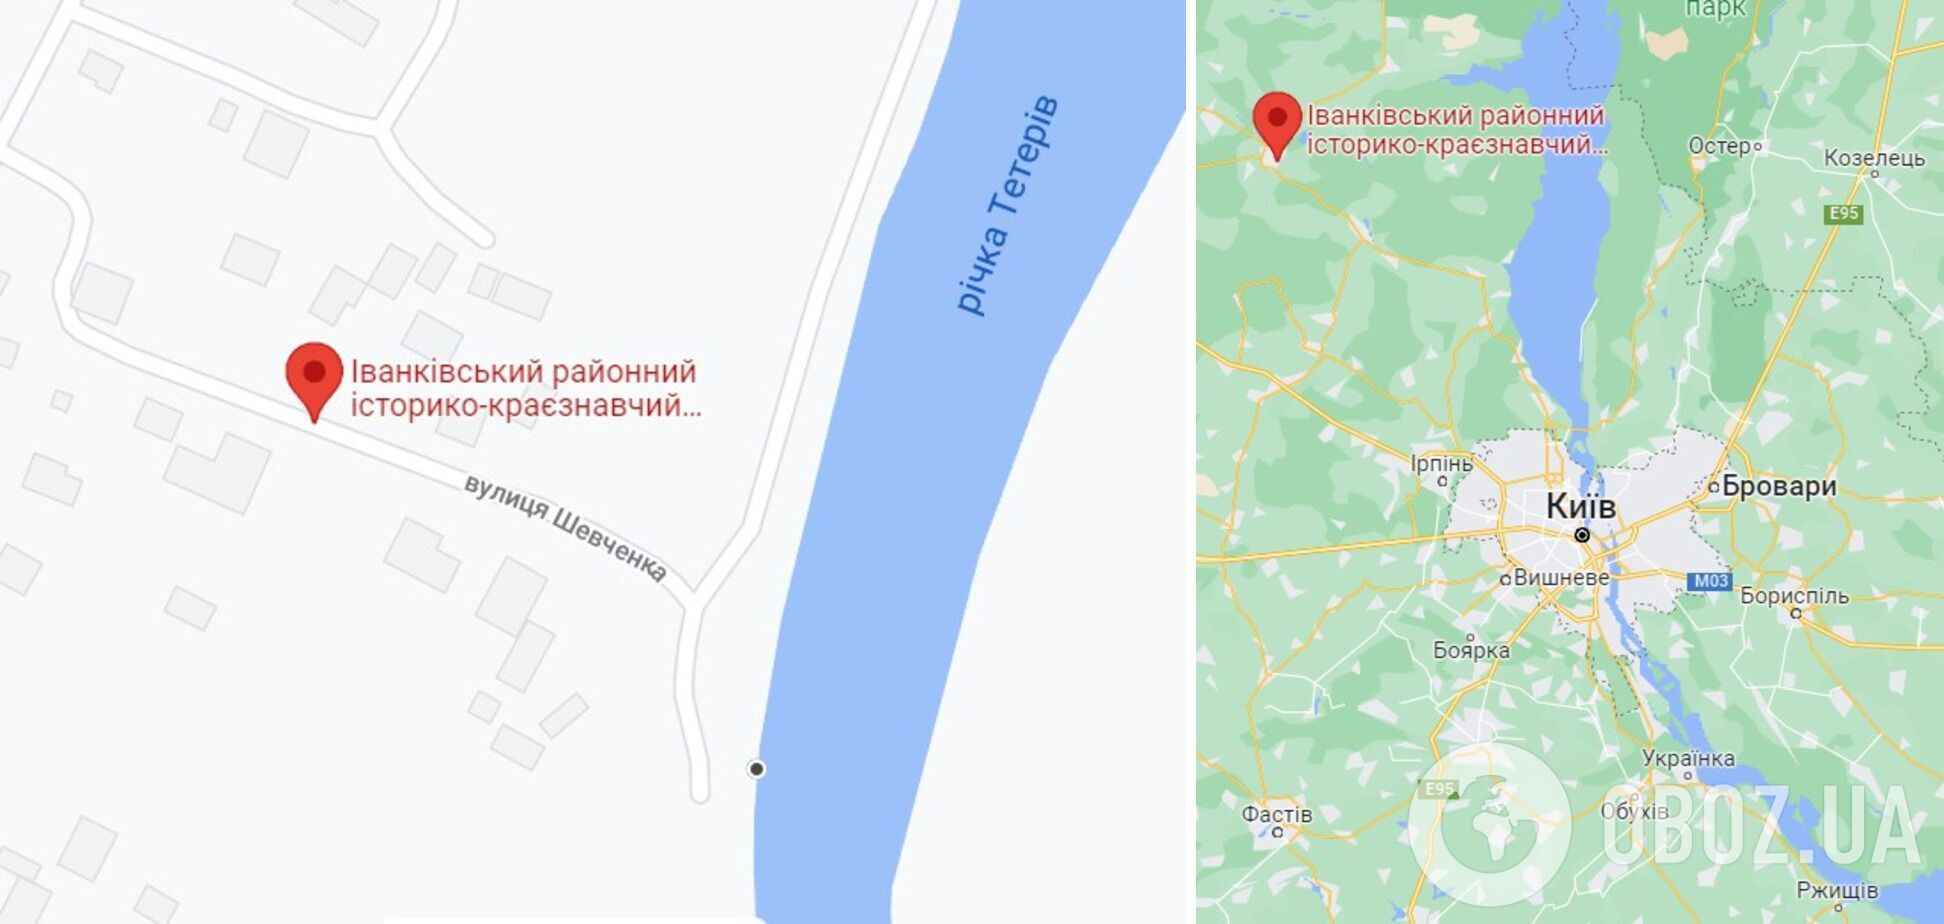 Іванків розташований на відстані 80 км до Києва